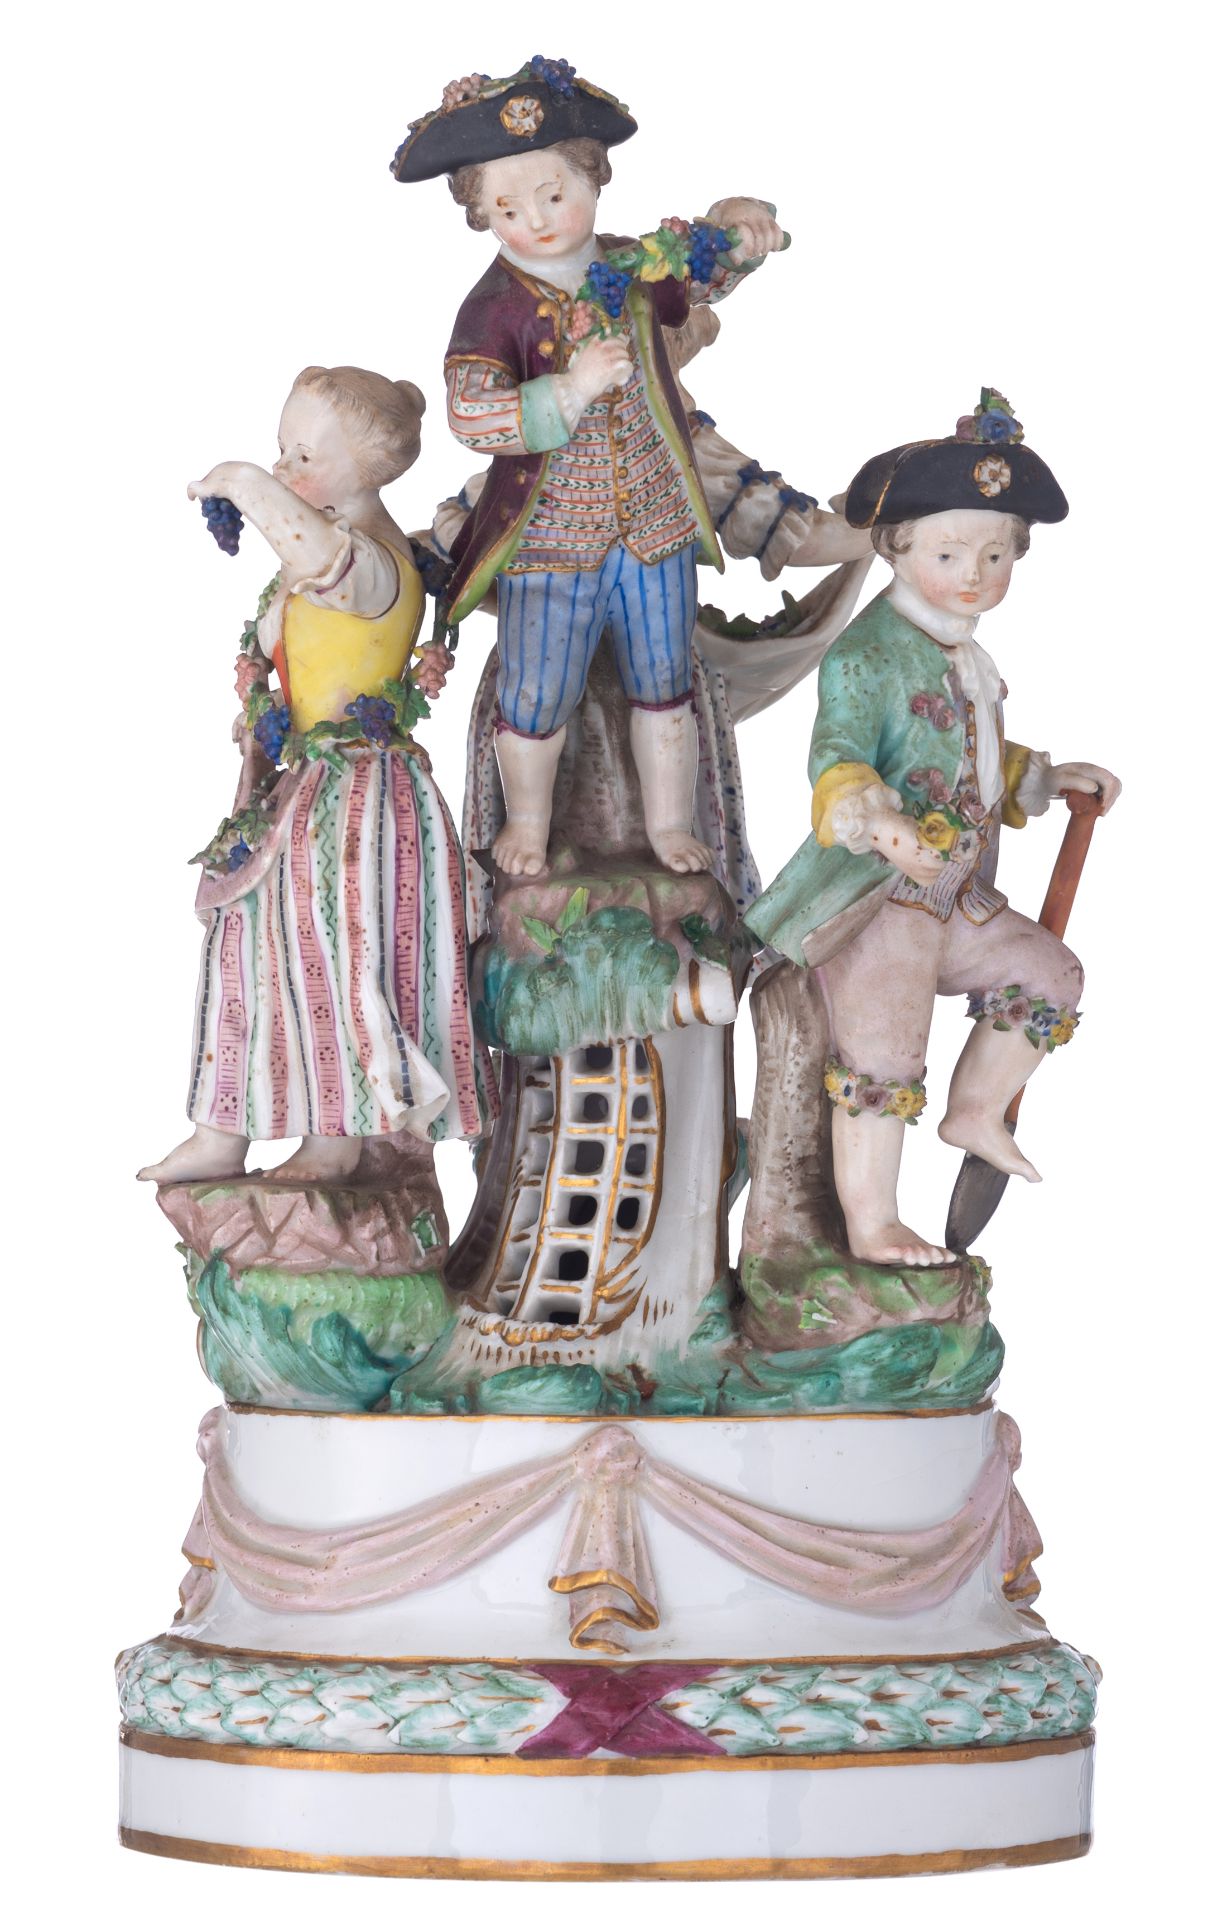 A Meissen porcelain group depicting 4 children, after the model by Kändler, 19thC, H 27 - ø 14,5 cm